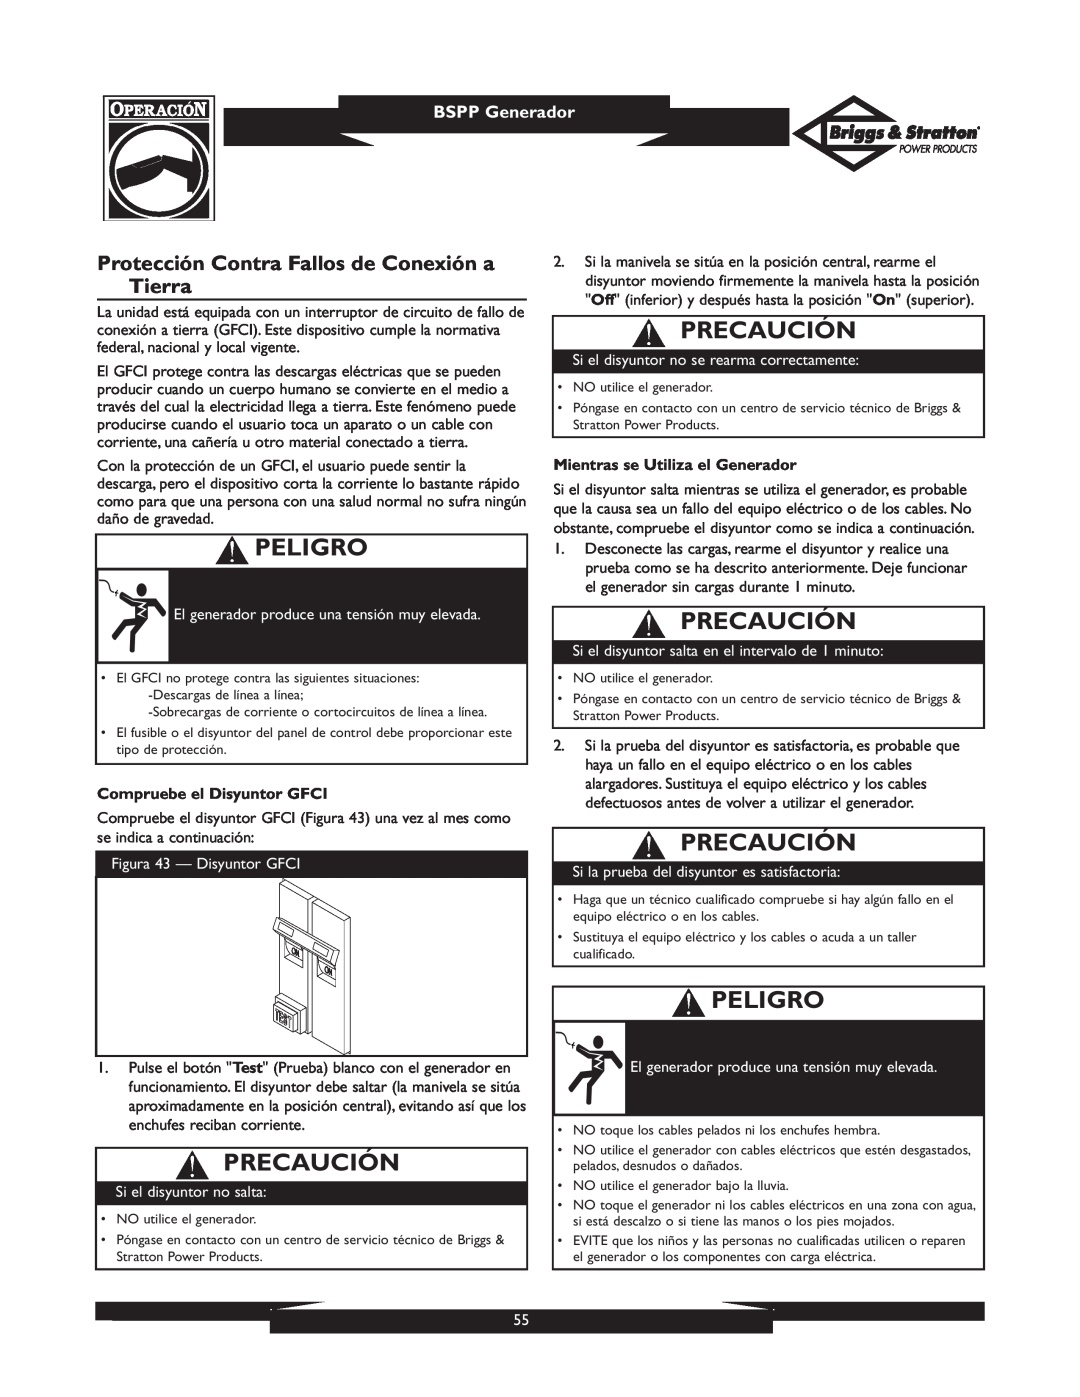 Briggs & Stratton PRO8000 owner manual Protección Contra Fallos de Conexión a Tierra, Precaución, Peligro, BSPP Generador 